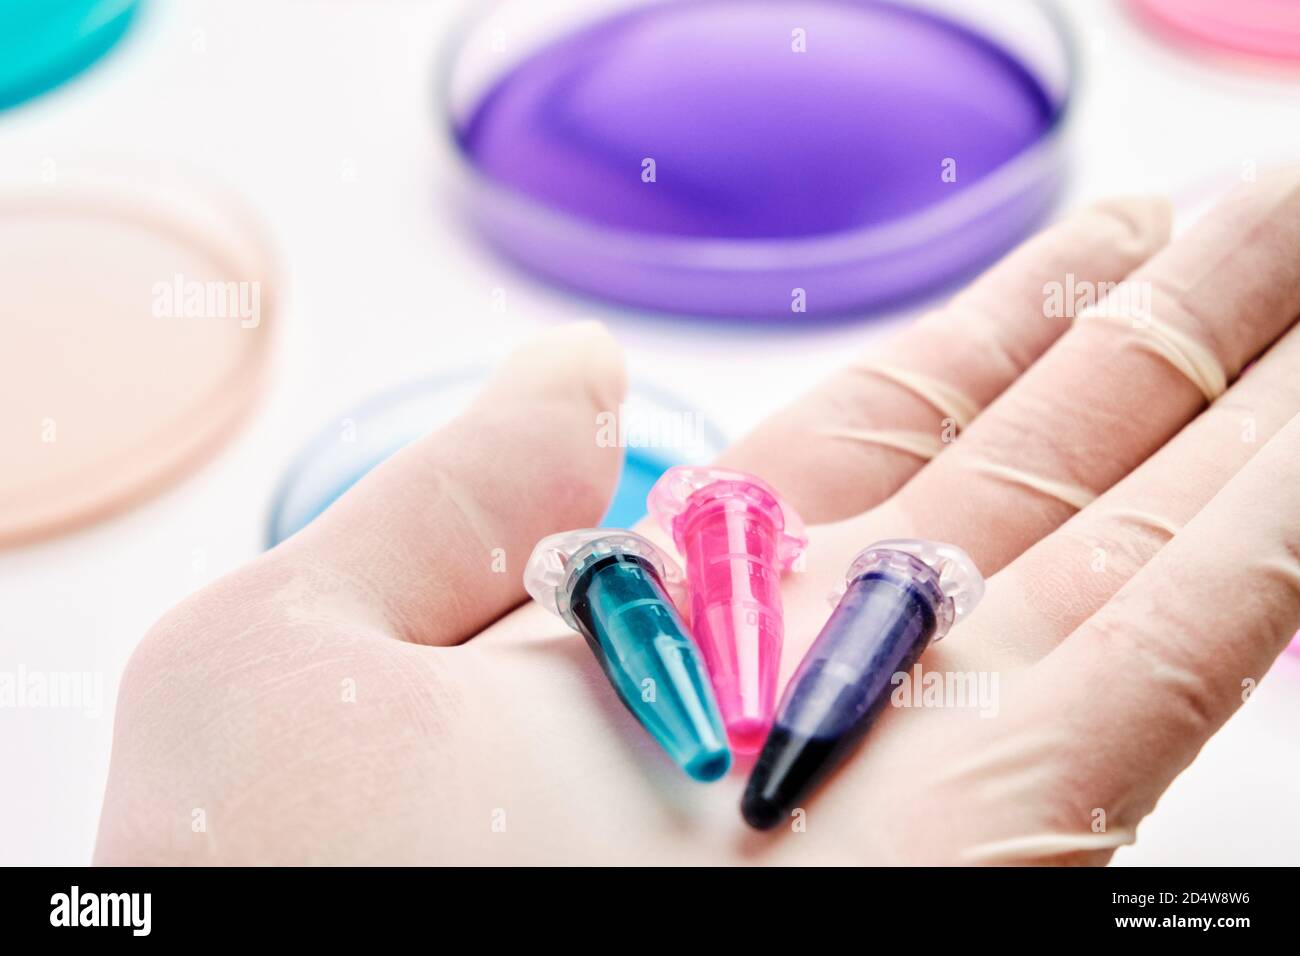 Eppendorf Röhrchen mit blauen, grünen und rosa Flüssigkeiten in der Hand des Wissenschaftlers auf dem Hintergrund von Petrischalen für die mikrochemische Analyse. Stockfoto